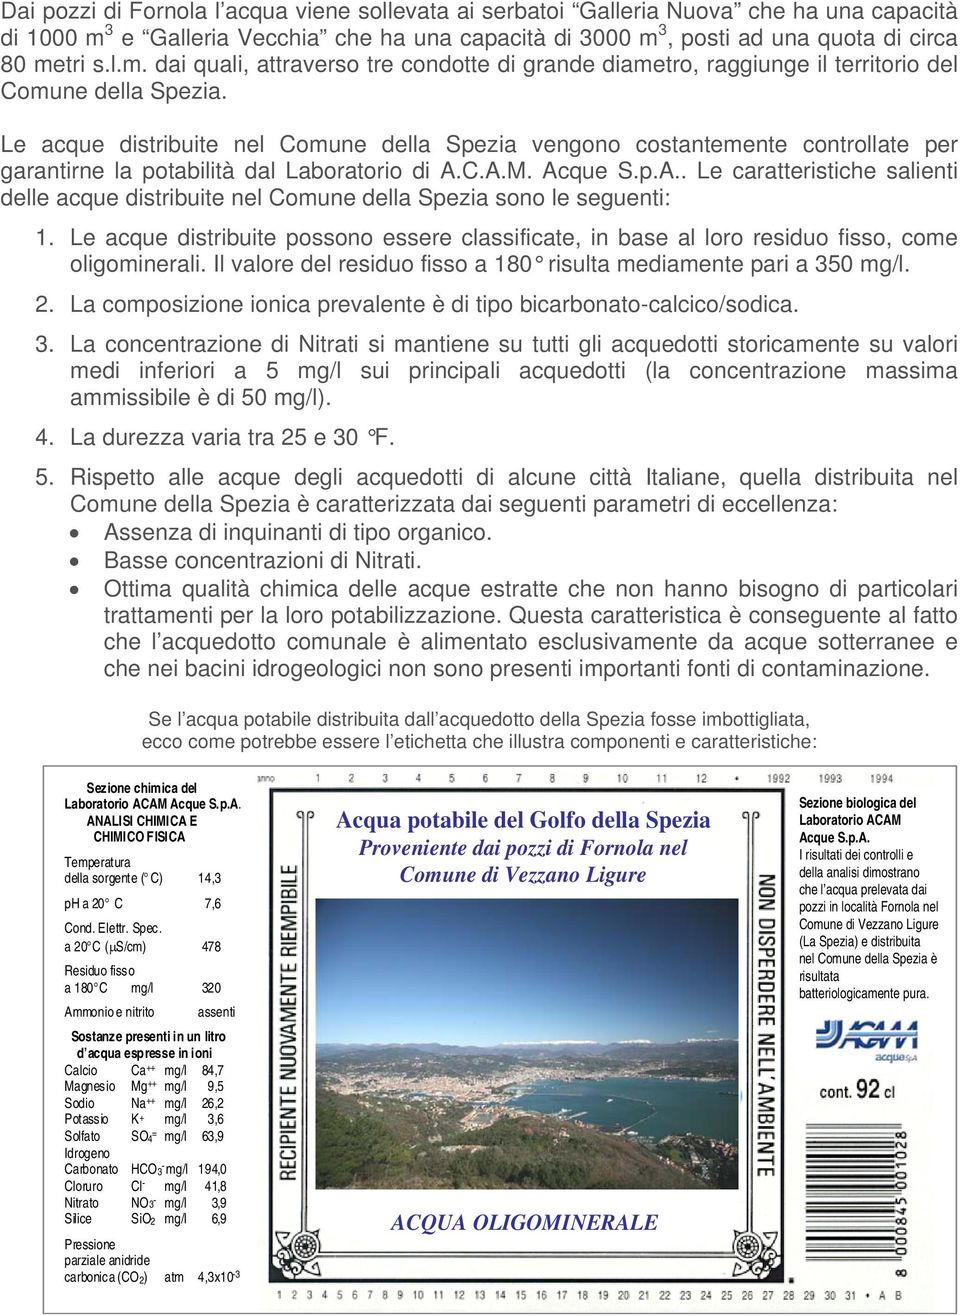 Le acque distribuite nel Comune della Spezia vengono costantemente controllate per garantirne la potabilità dal Laboratorio di A.